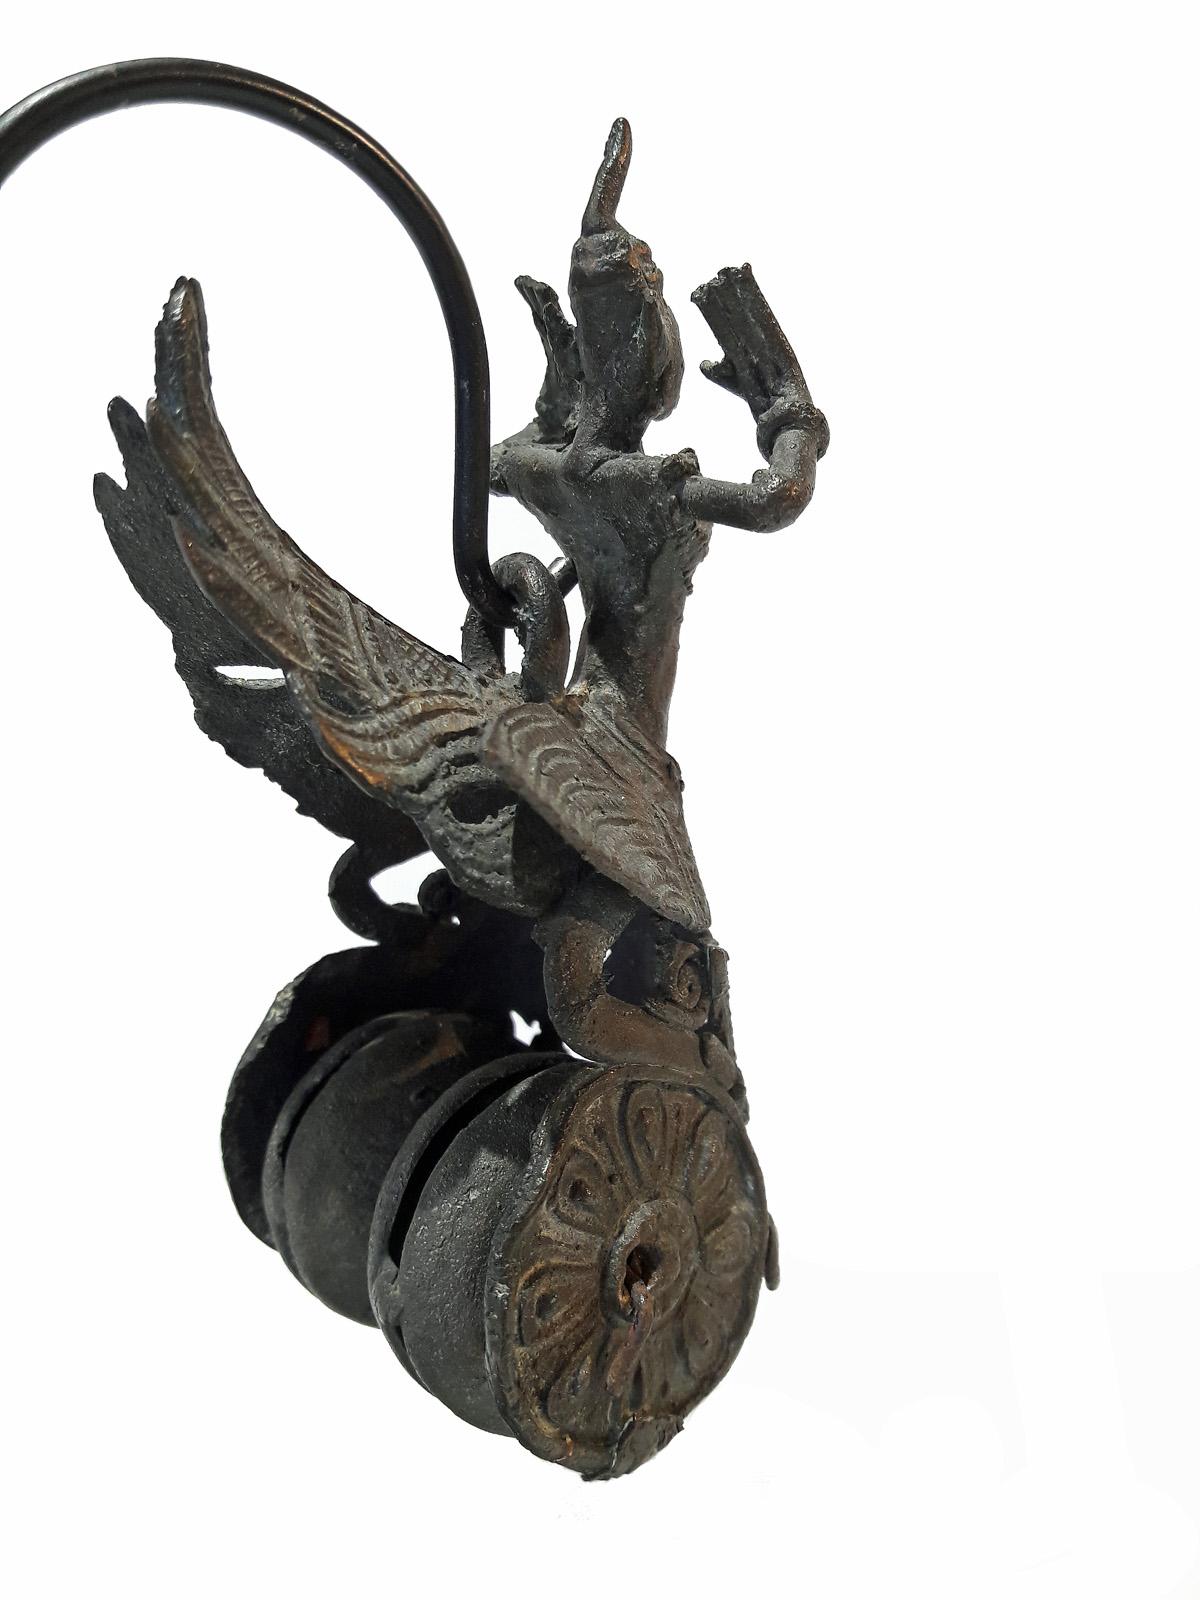 Other Hindu Deity Miniature Sculptures, 19th Century